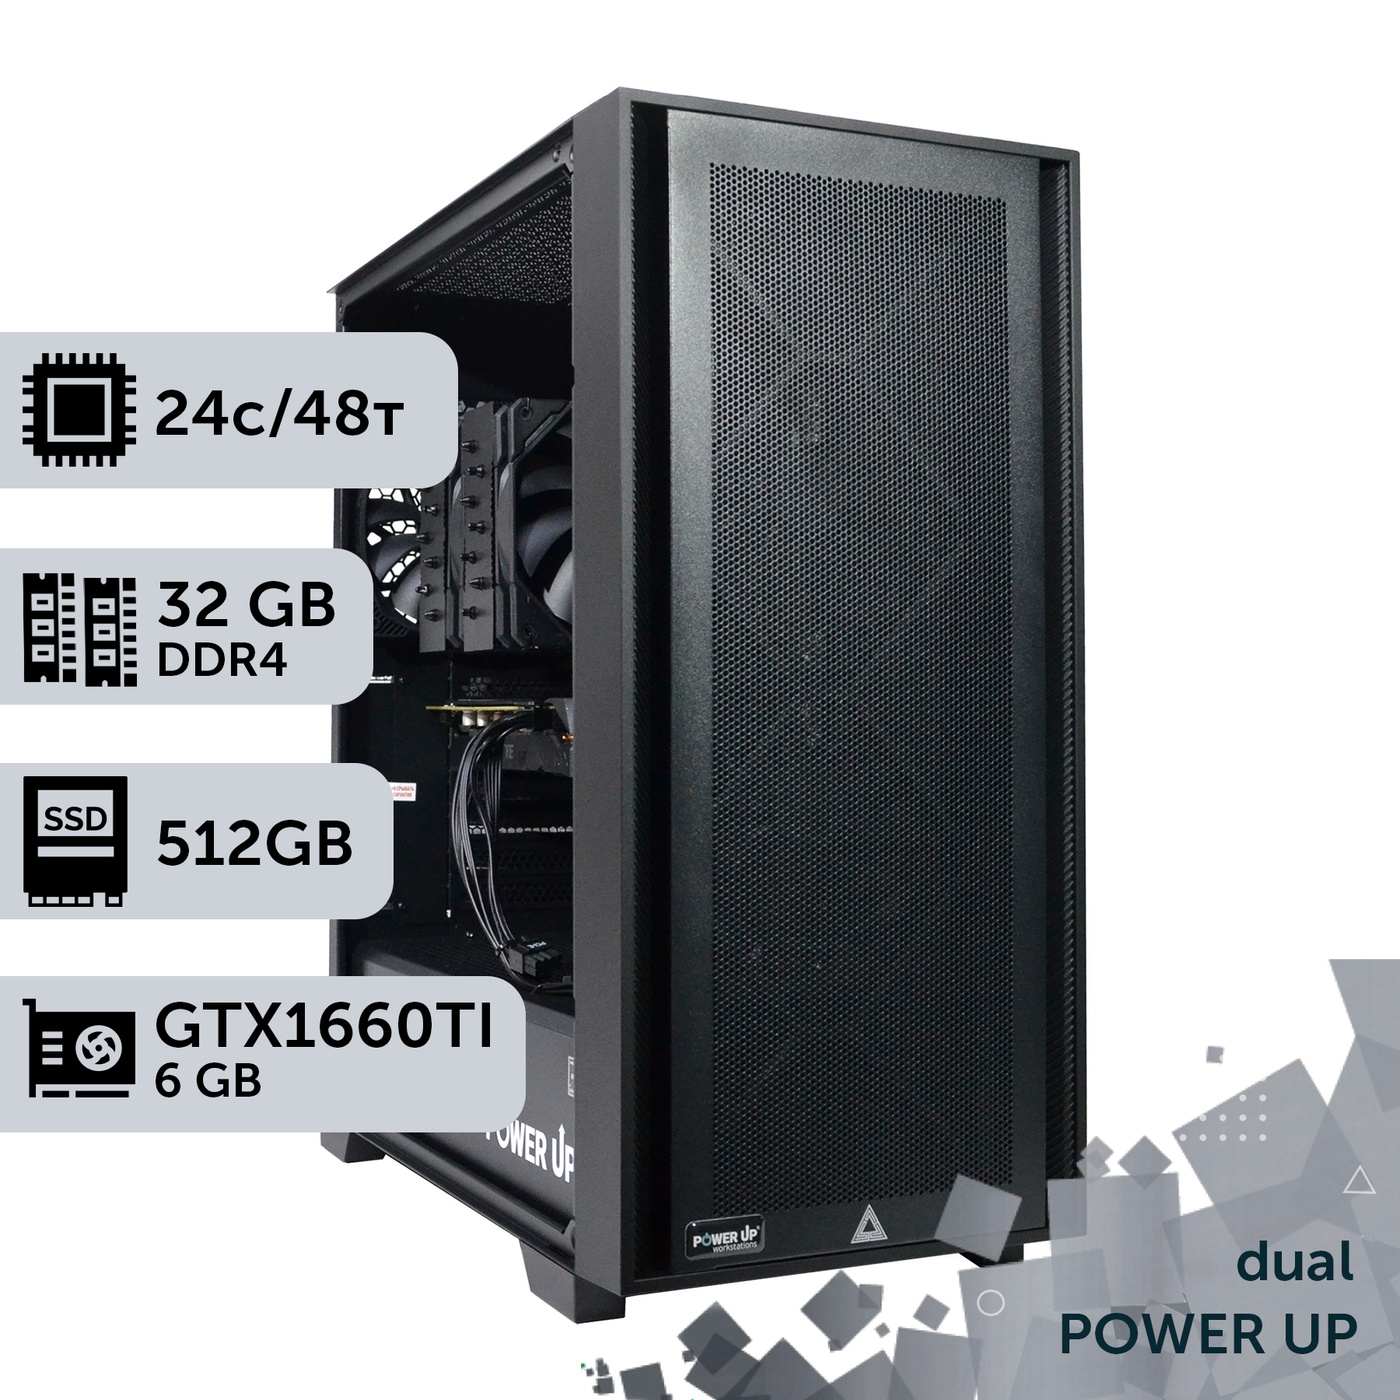 Двухпроцессорная рабочая станция PowerUp #292 Xeon E5 2690 v3 x2/32 GB/SSD 512GB/GeForce GTX 1660Ti 6GB